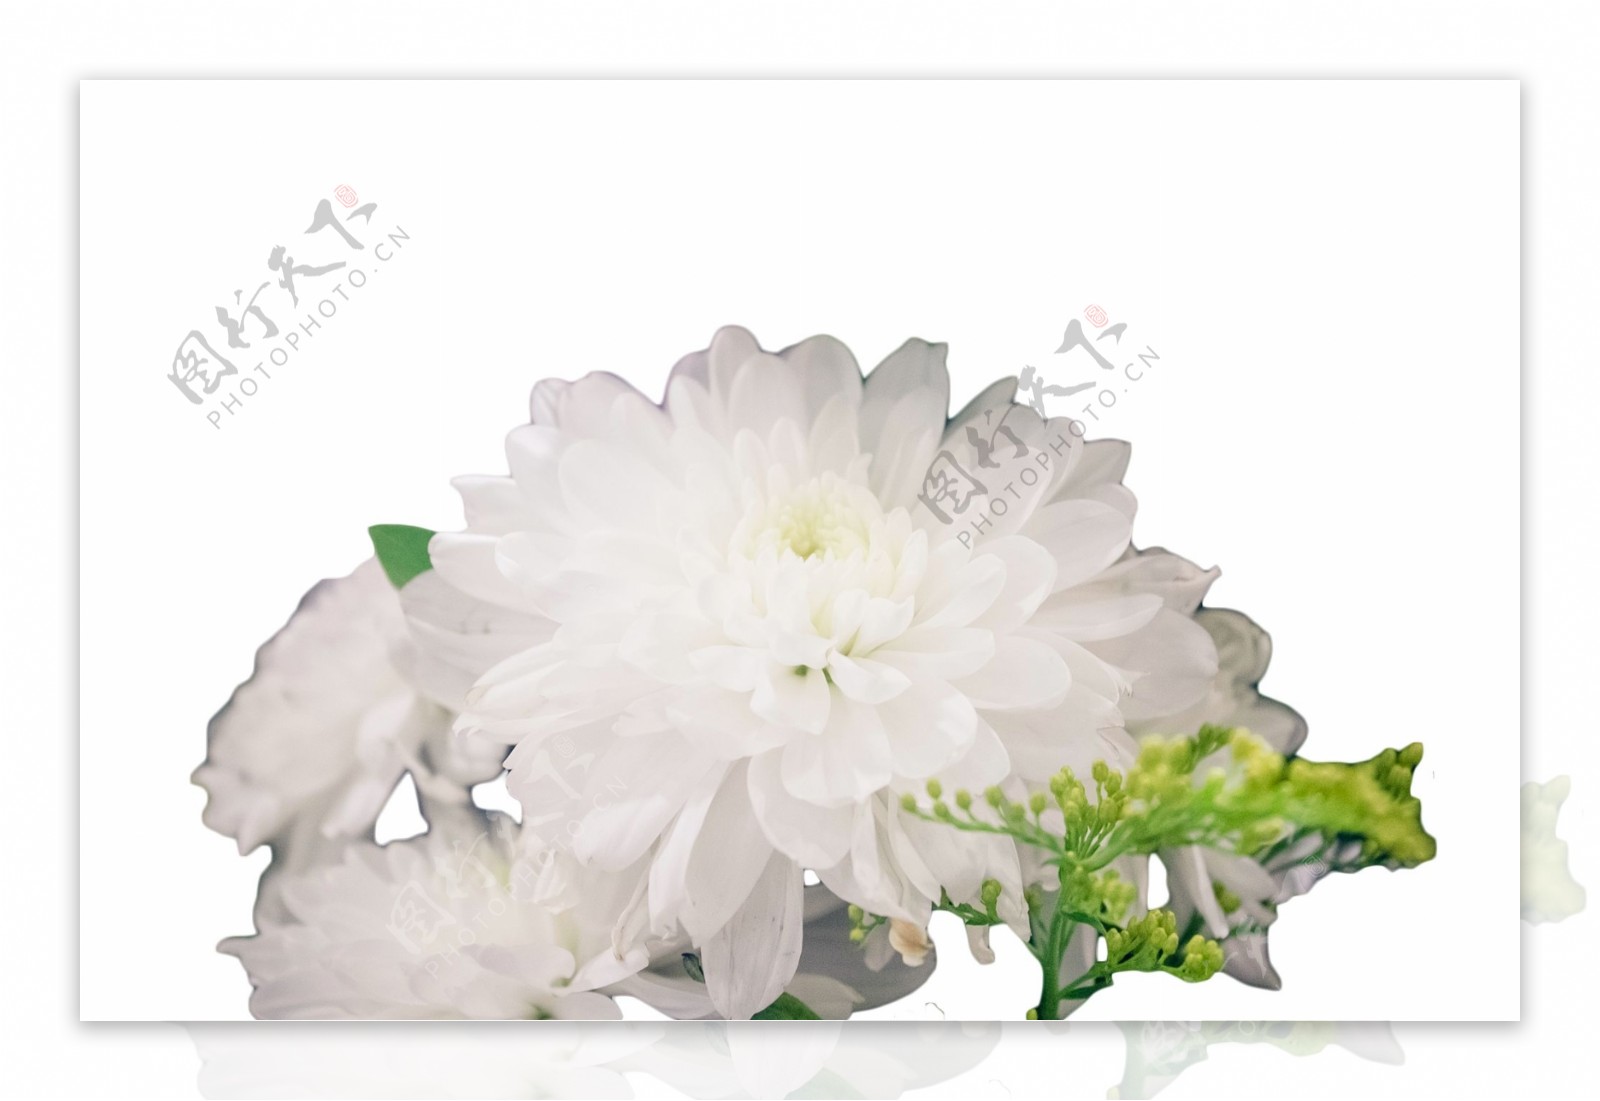 美丽漂亮的白色大花朵